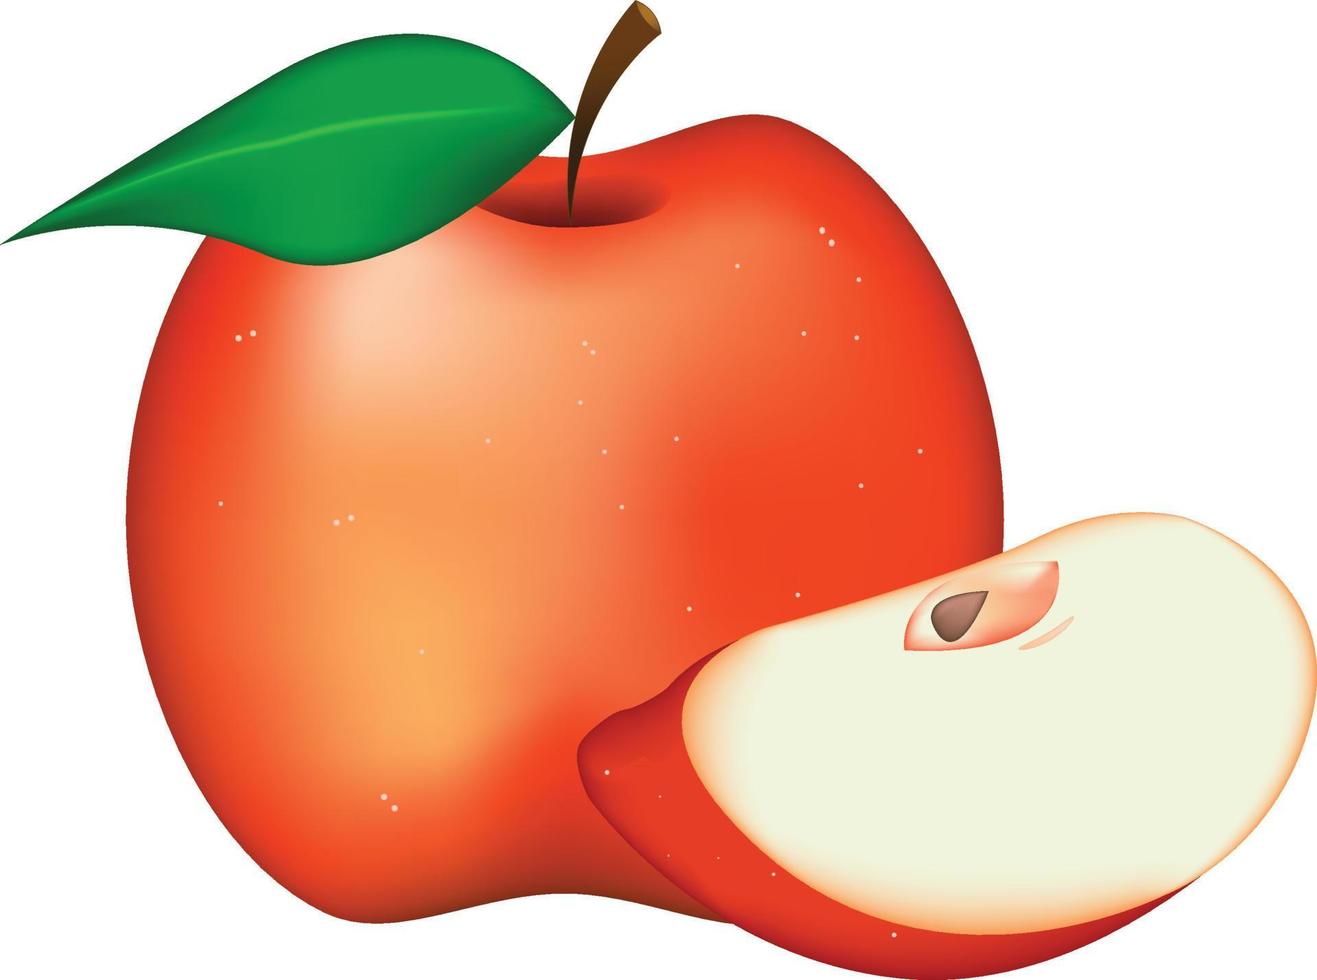 manzanas rojas realistas aisladas en el arte del icono del vector de fondo blanco.